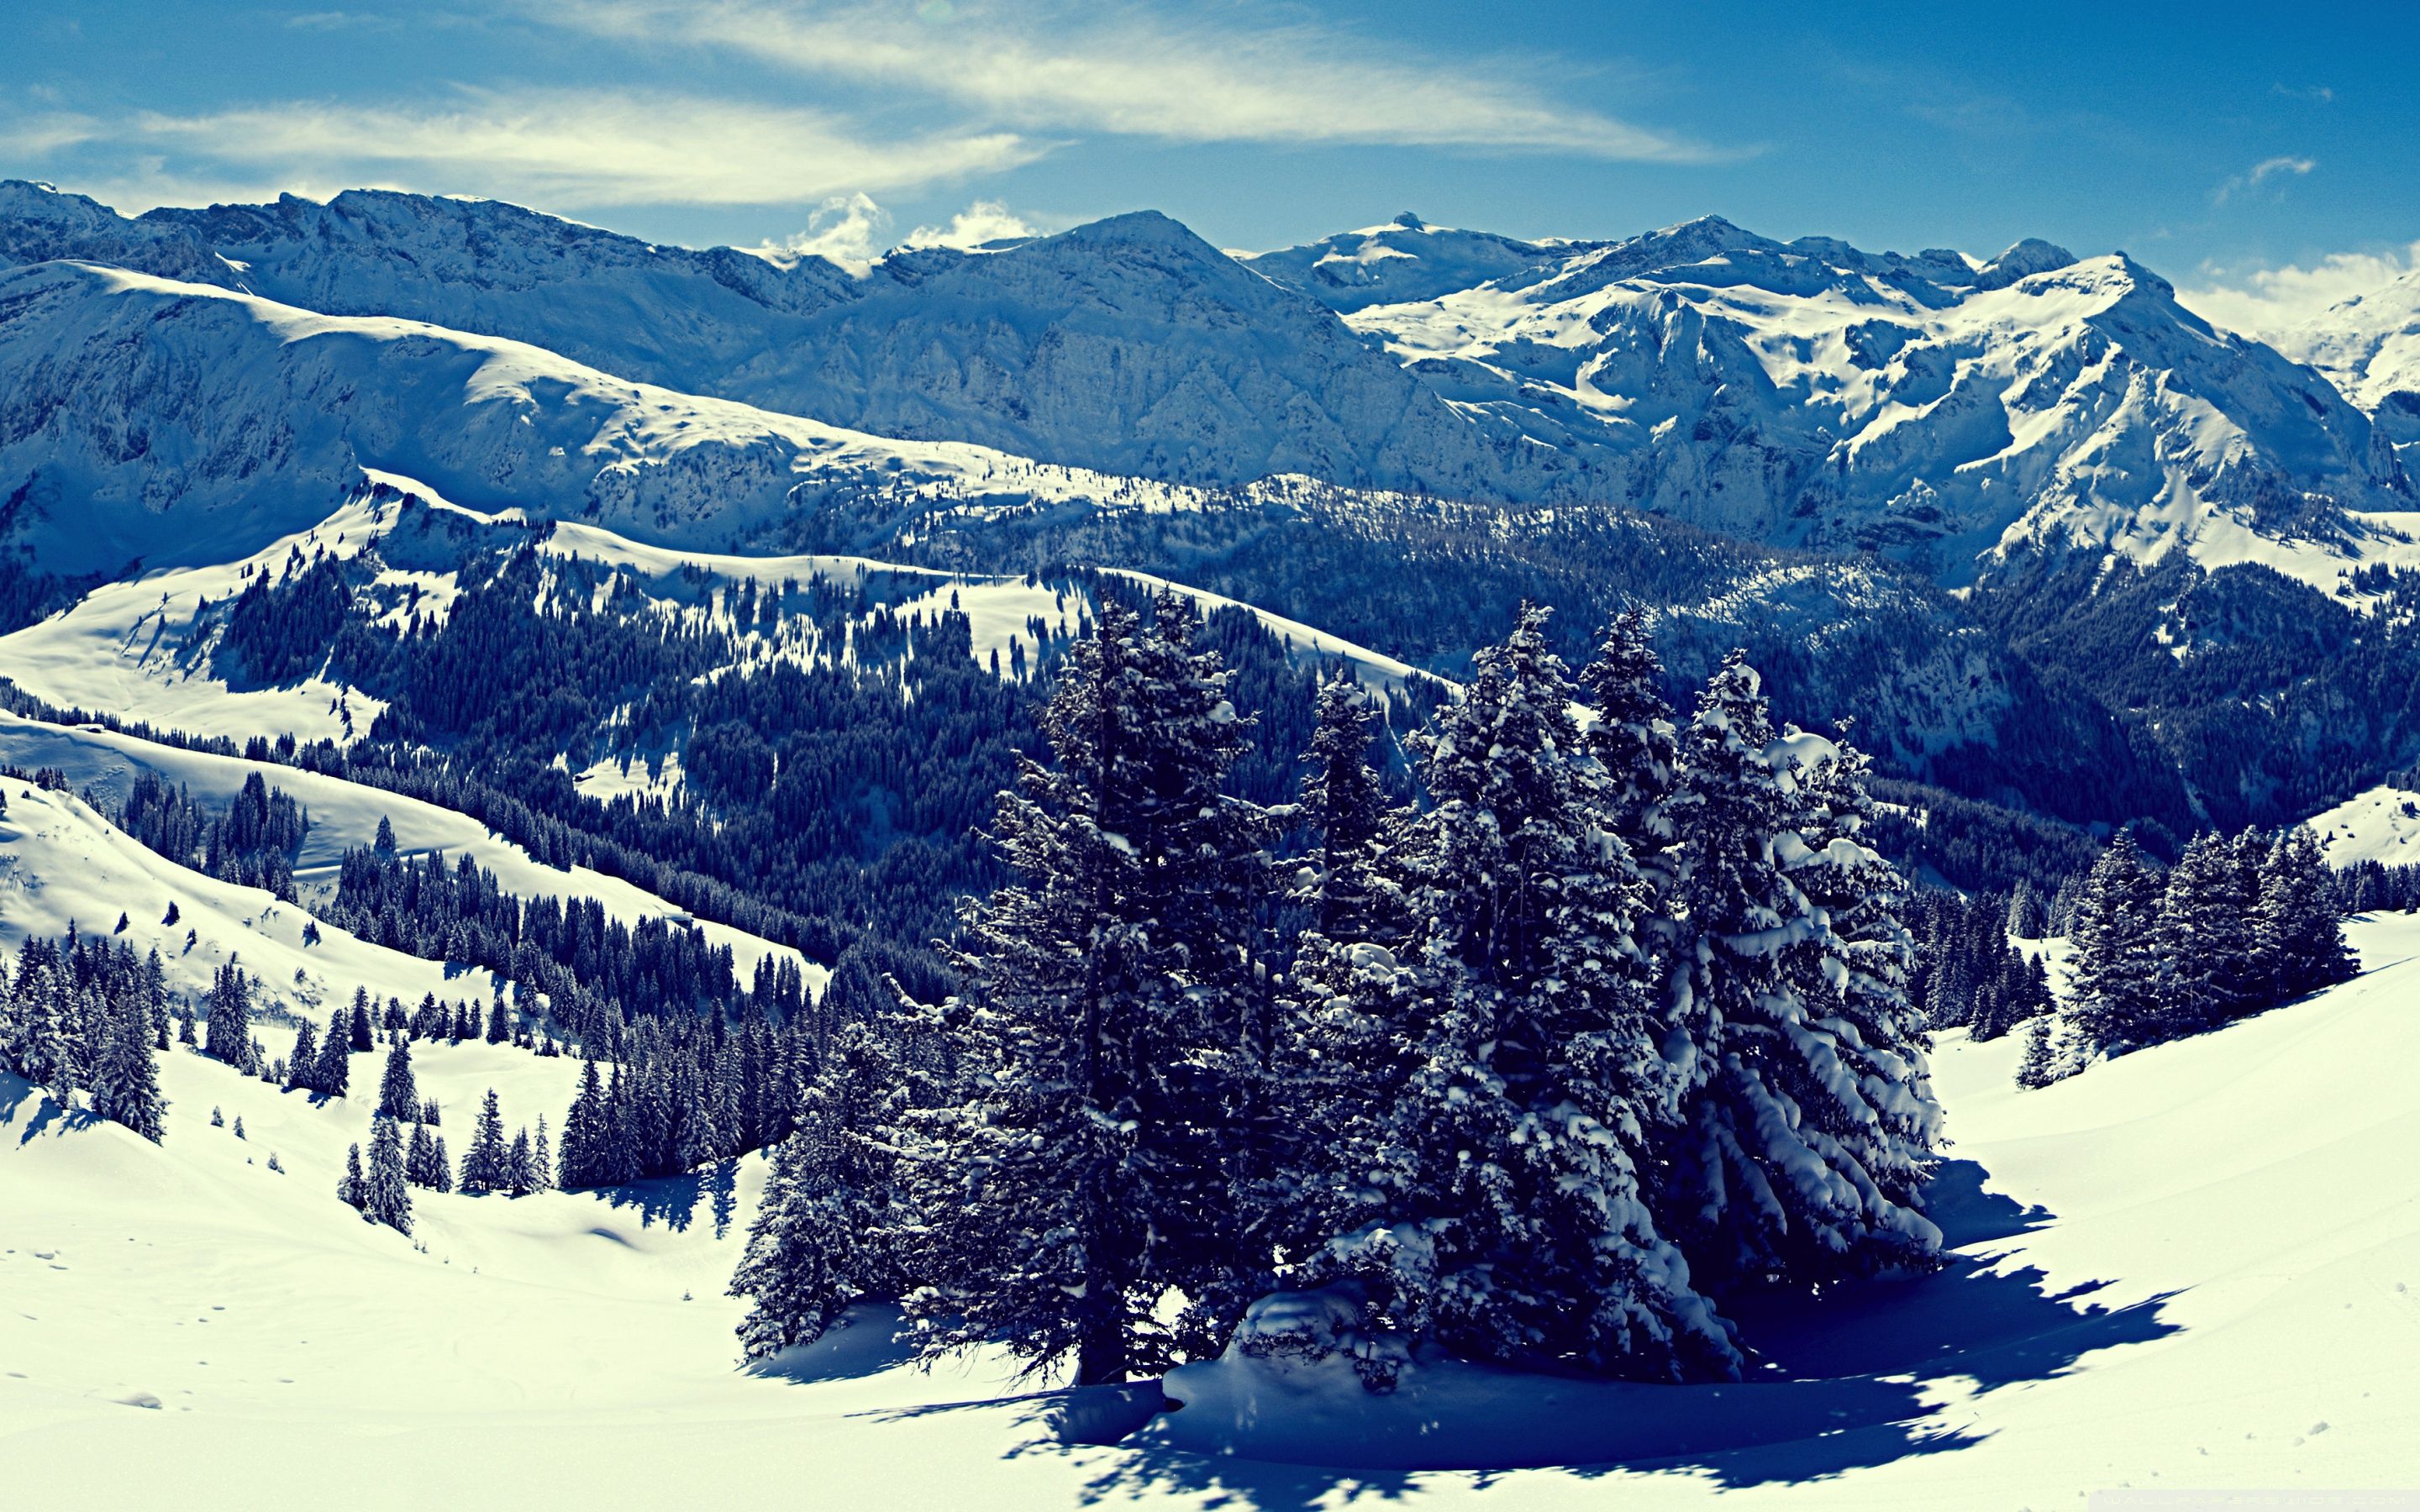 Winter Mountain Landscape Wallpaper